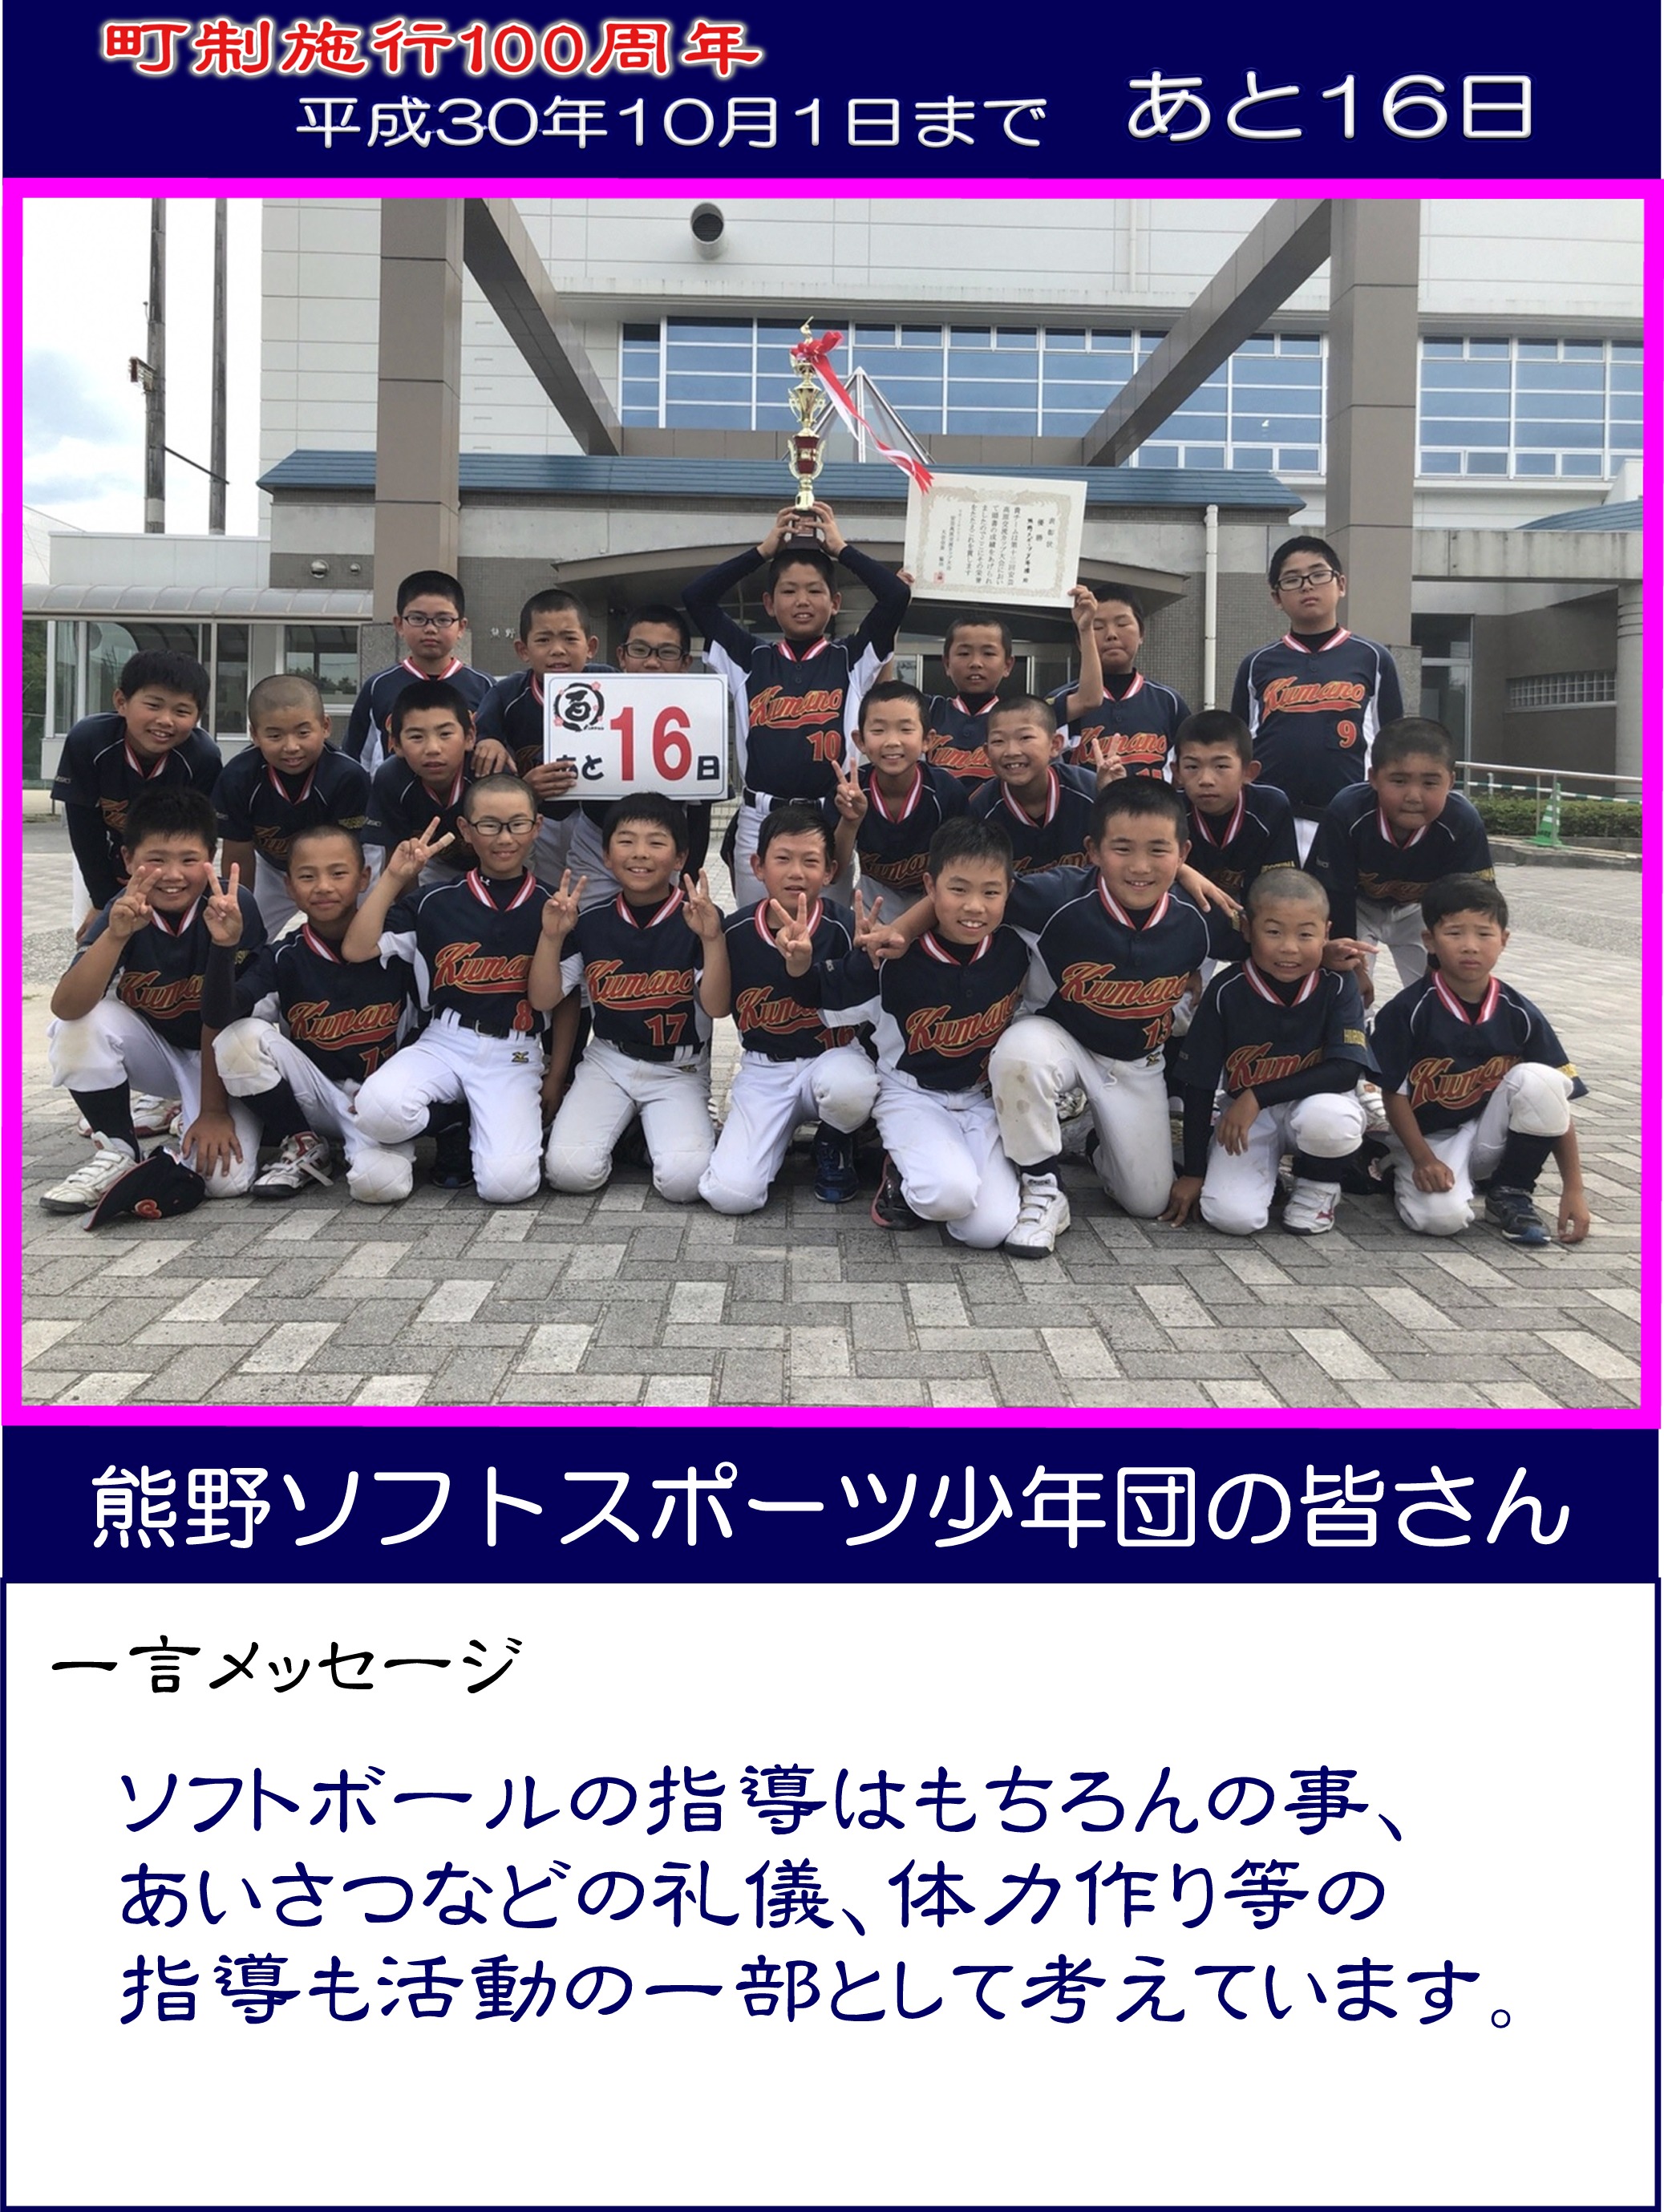 カウントダウン写真熊野ソフトスポーツ少年団16